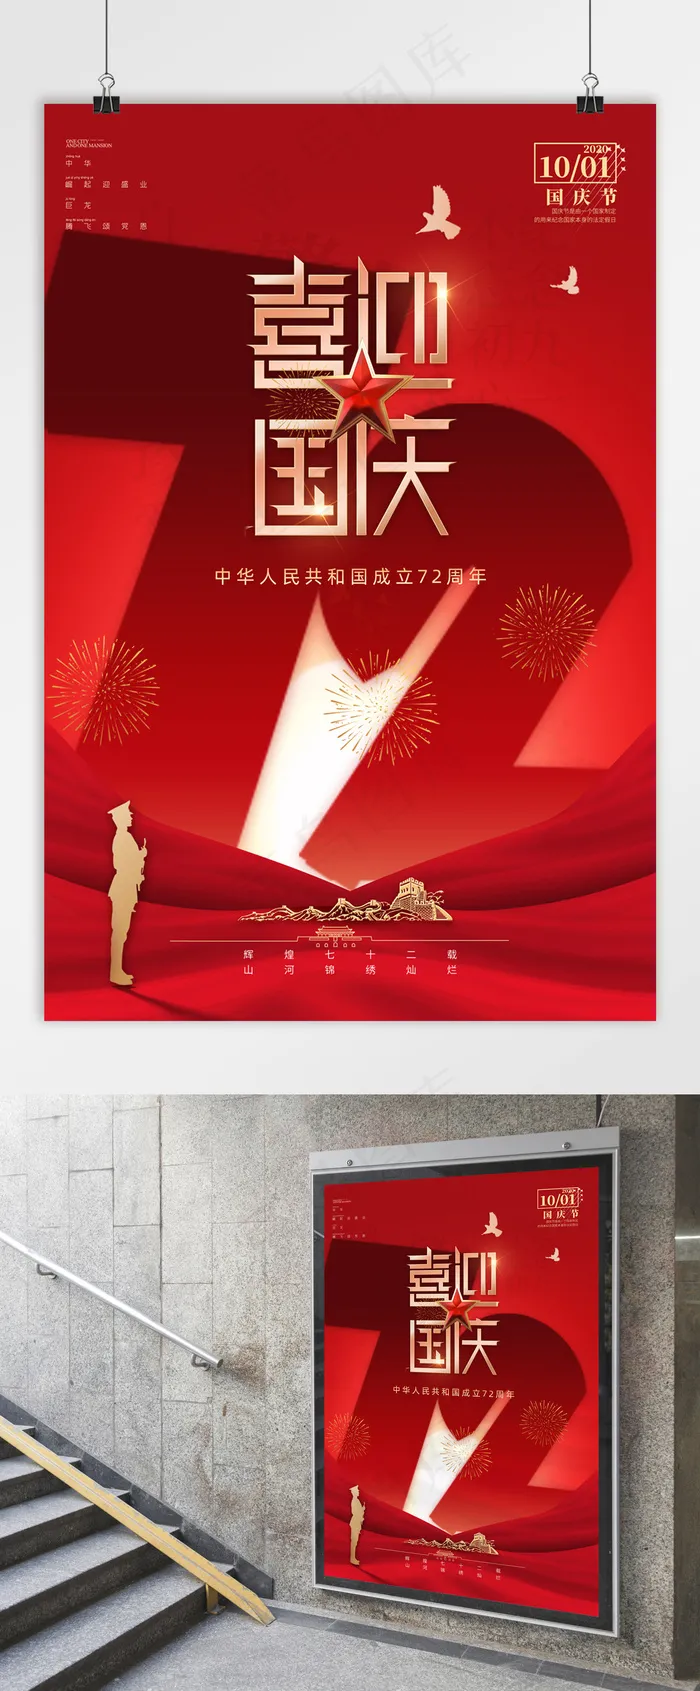 国庆 建国72周年 国庆节海报 喜迎国庆